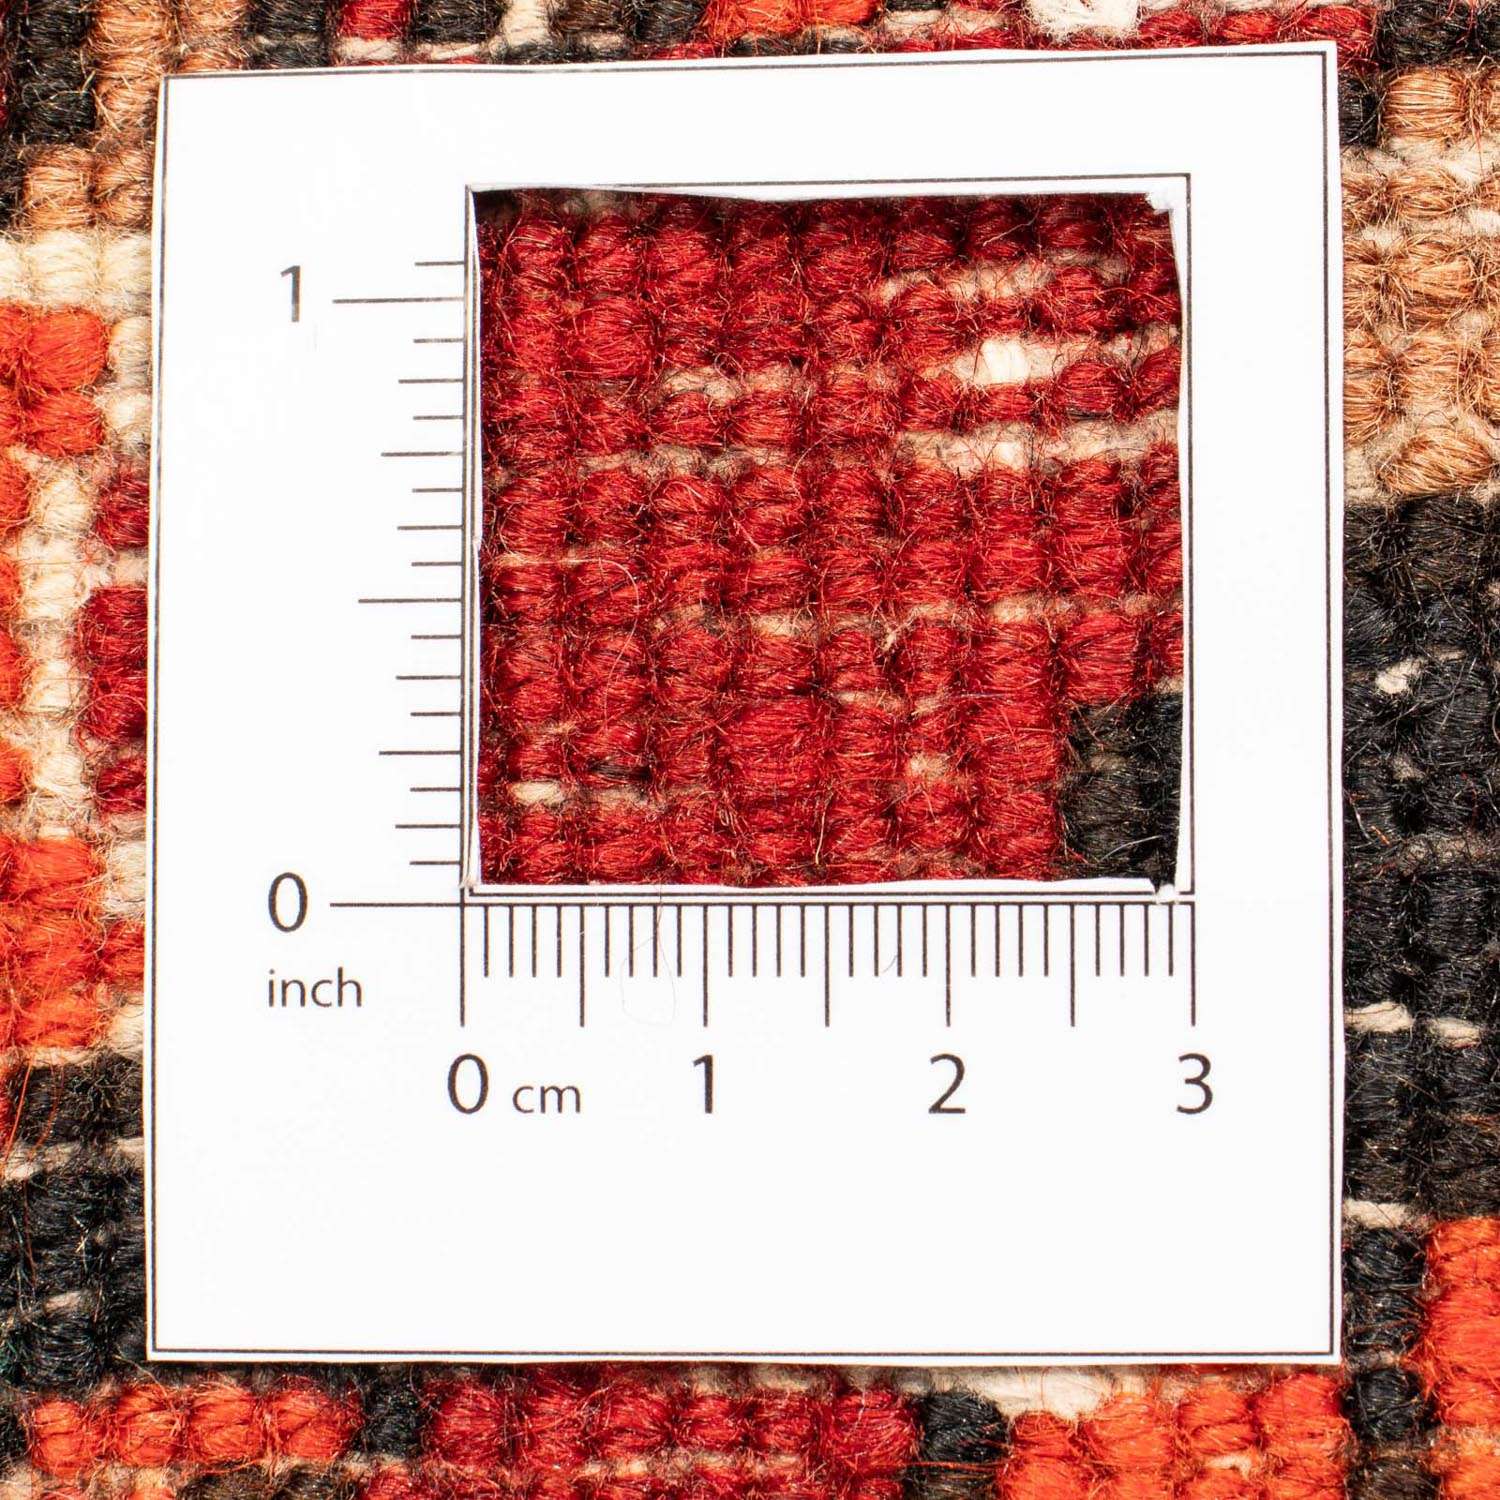 Tapete Persa - Nomadic - 295 x 202 cm - vermelho escuro